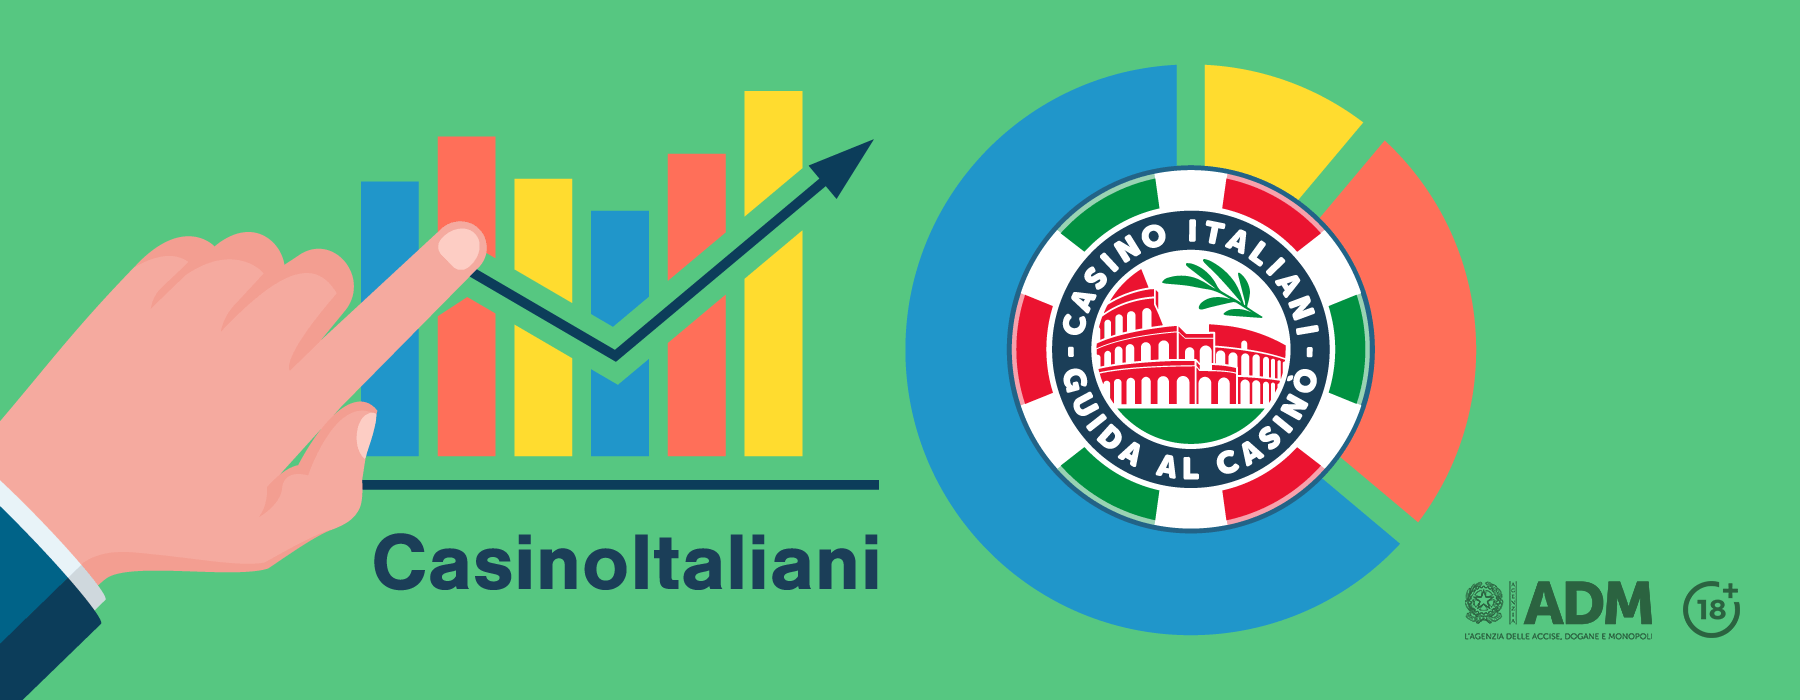 Spesa casinò italiani online: a marzo un aumento del 14,7% rispetto all’anno precedente